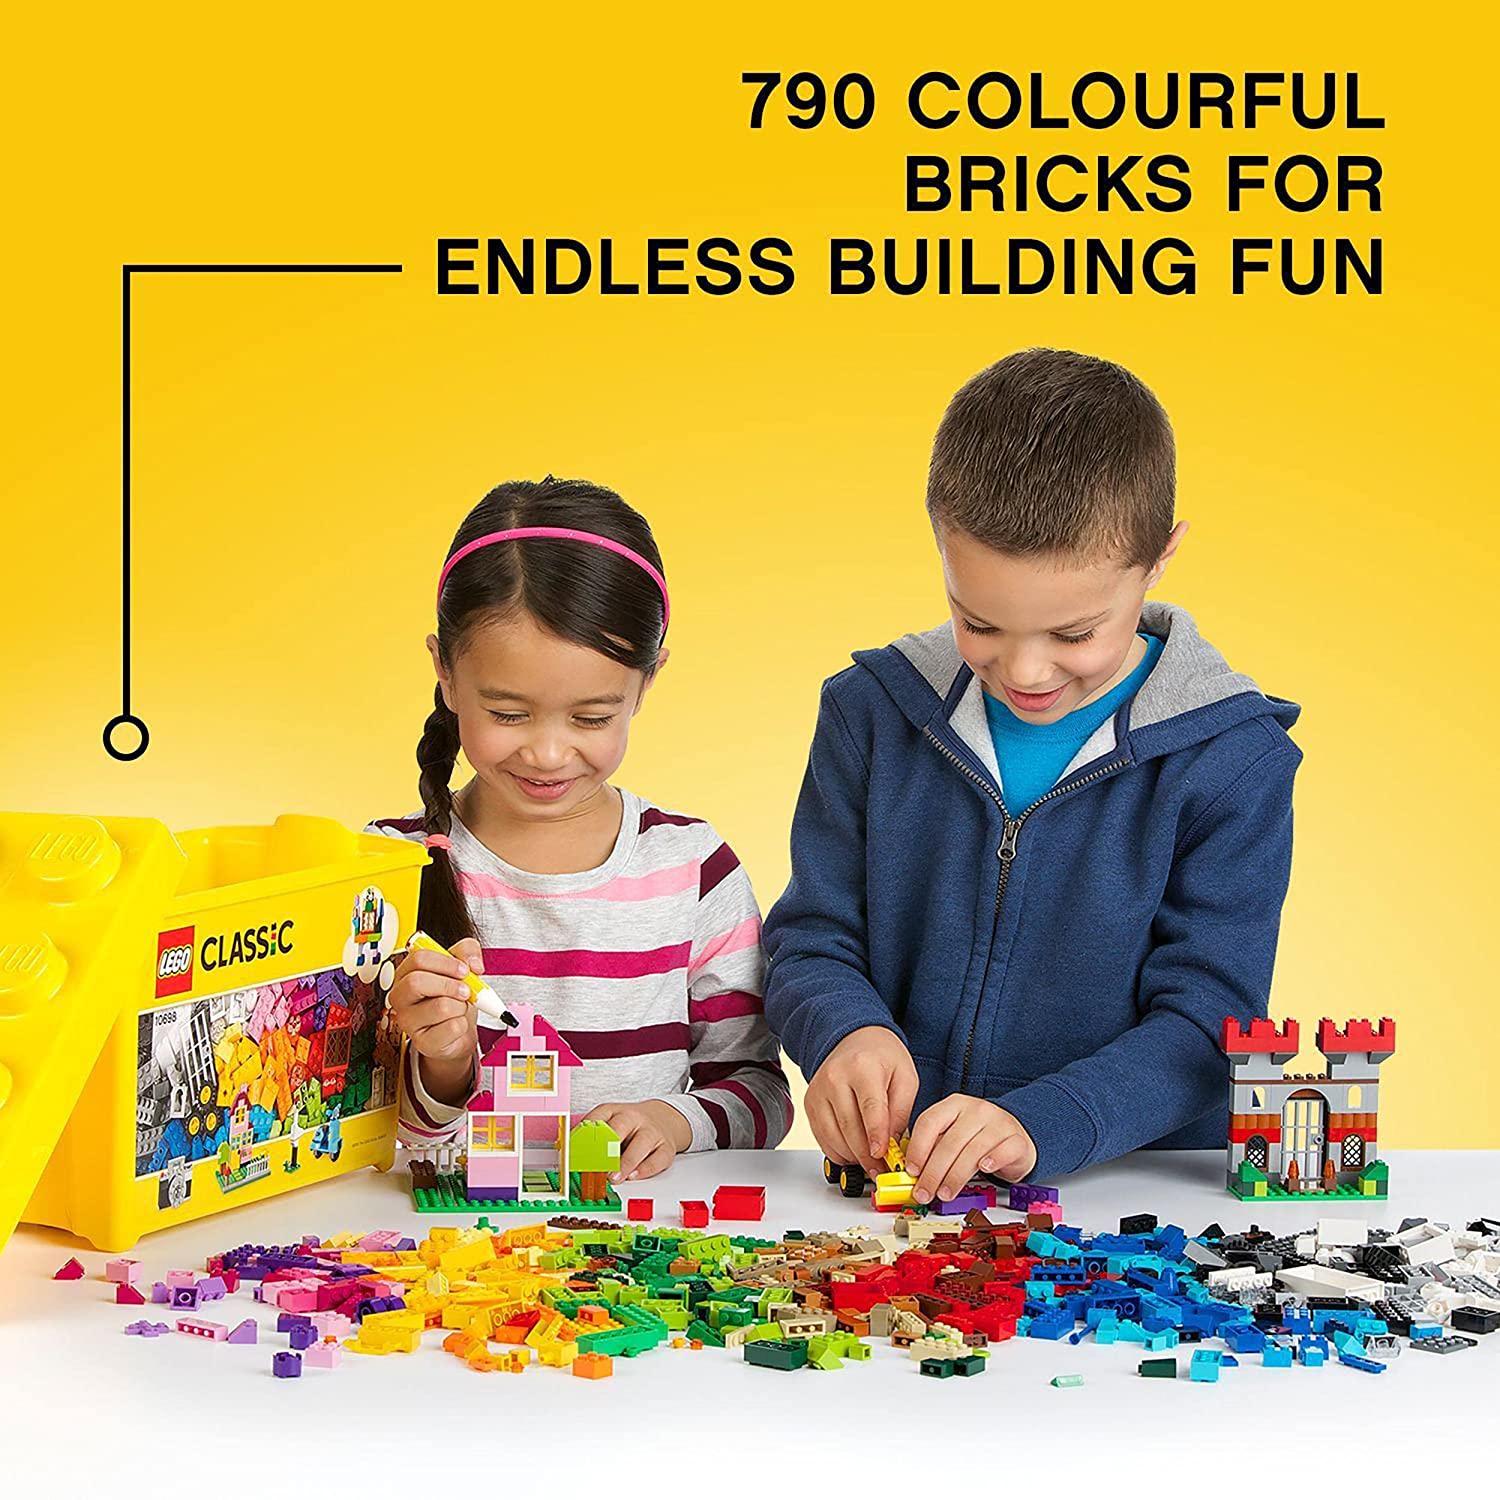 Lego 10698 Large Creative Brick